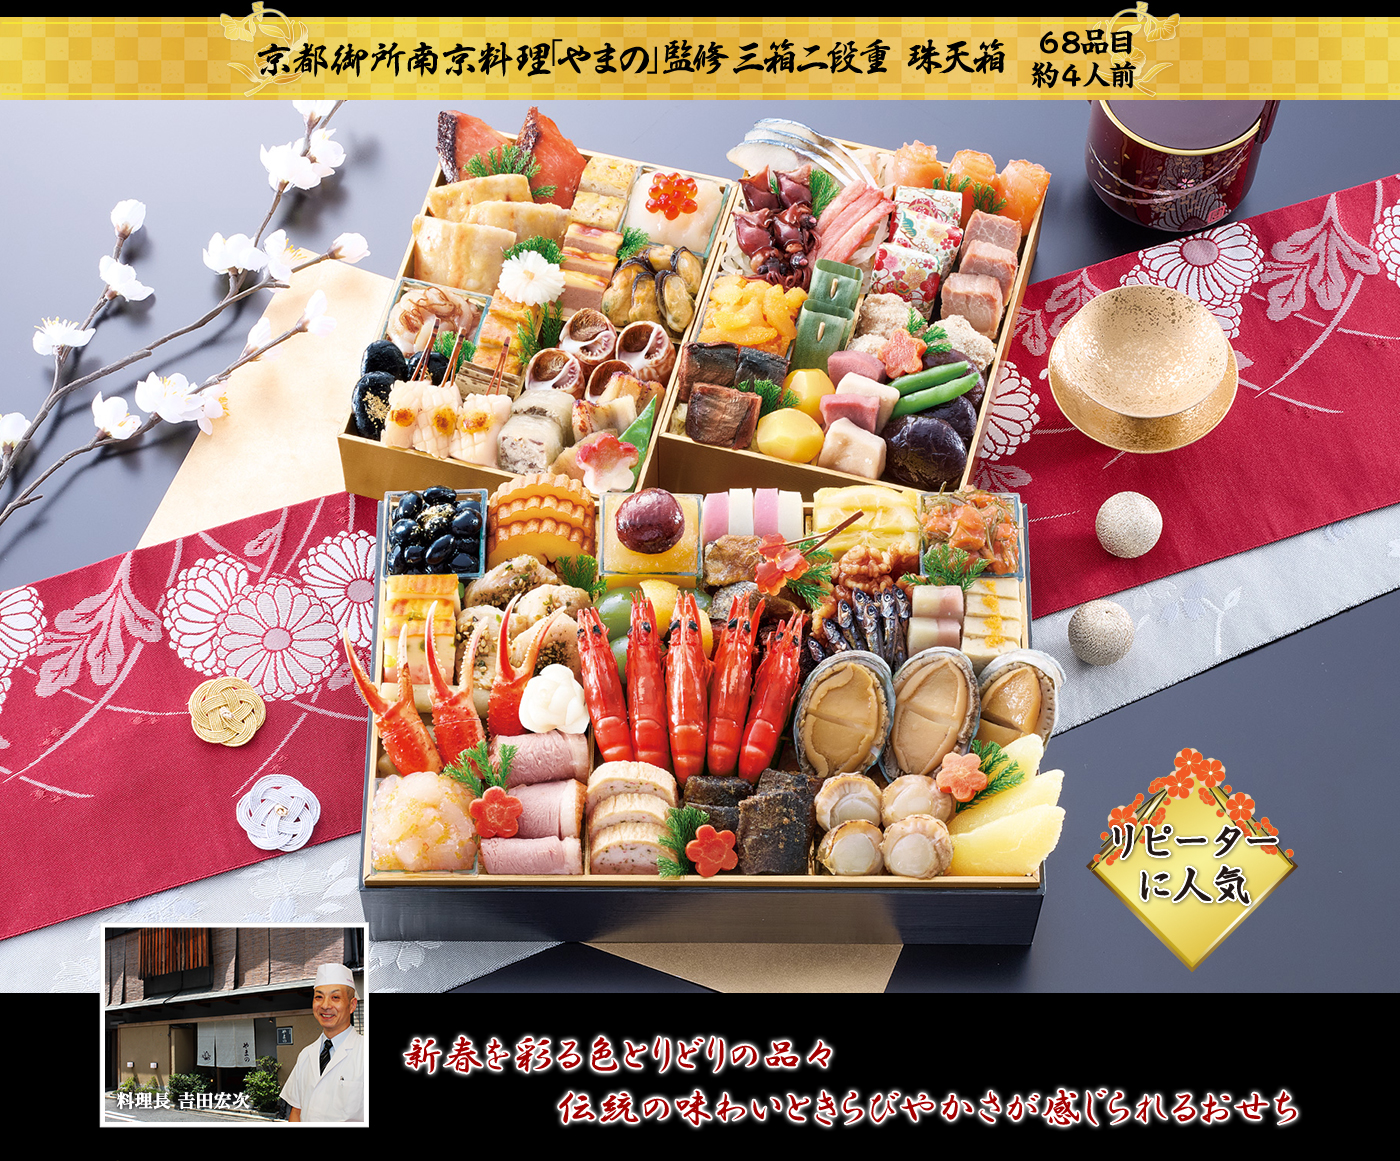 京都御所南京料理「やまの」監修 三箱二段重 珠天箱 新春を彩る色とりどりの品々 伝統の味わいときらびやかさが感じられるおせち